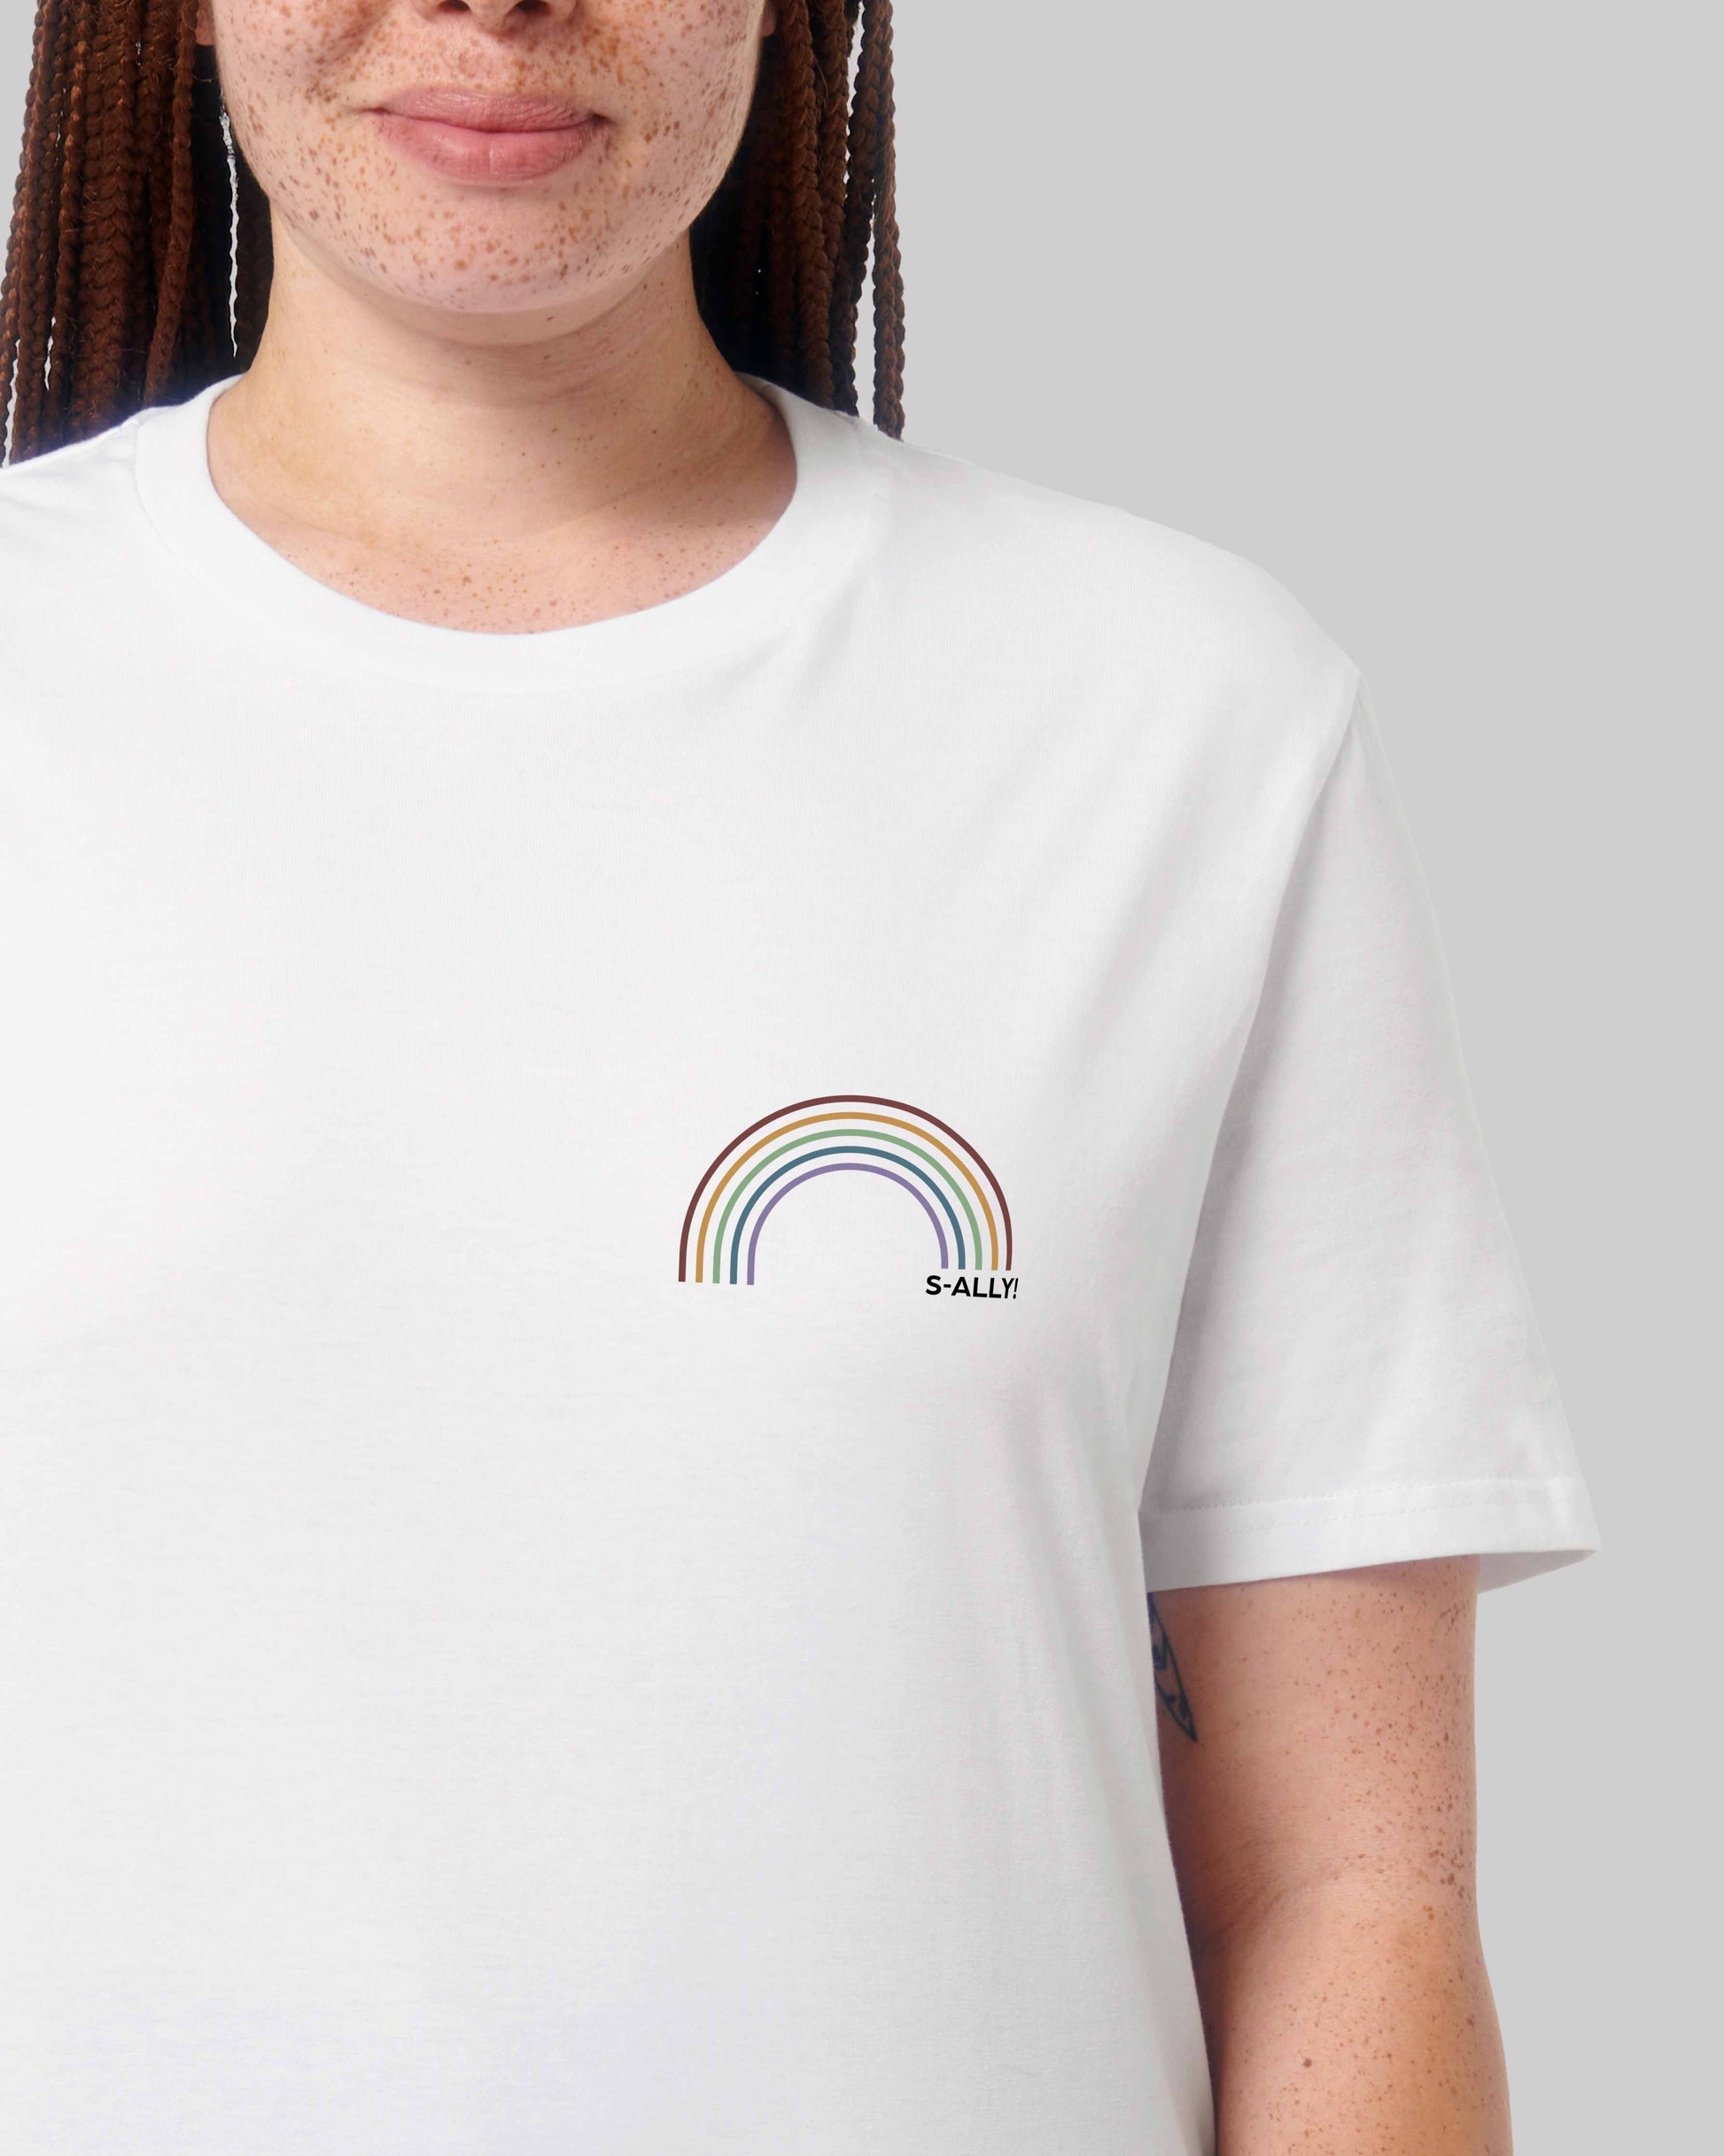 EINHORST® unisex Organic Shirt in Weiß mit dem Motiv "s-ally Regenbogen" in der Kombination bunter Regenbogen mit schwarzer Schrift, Bild von weiblicher Person mit Shirt